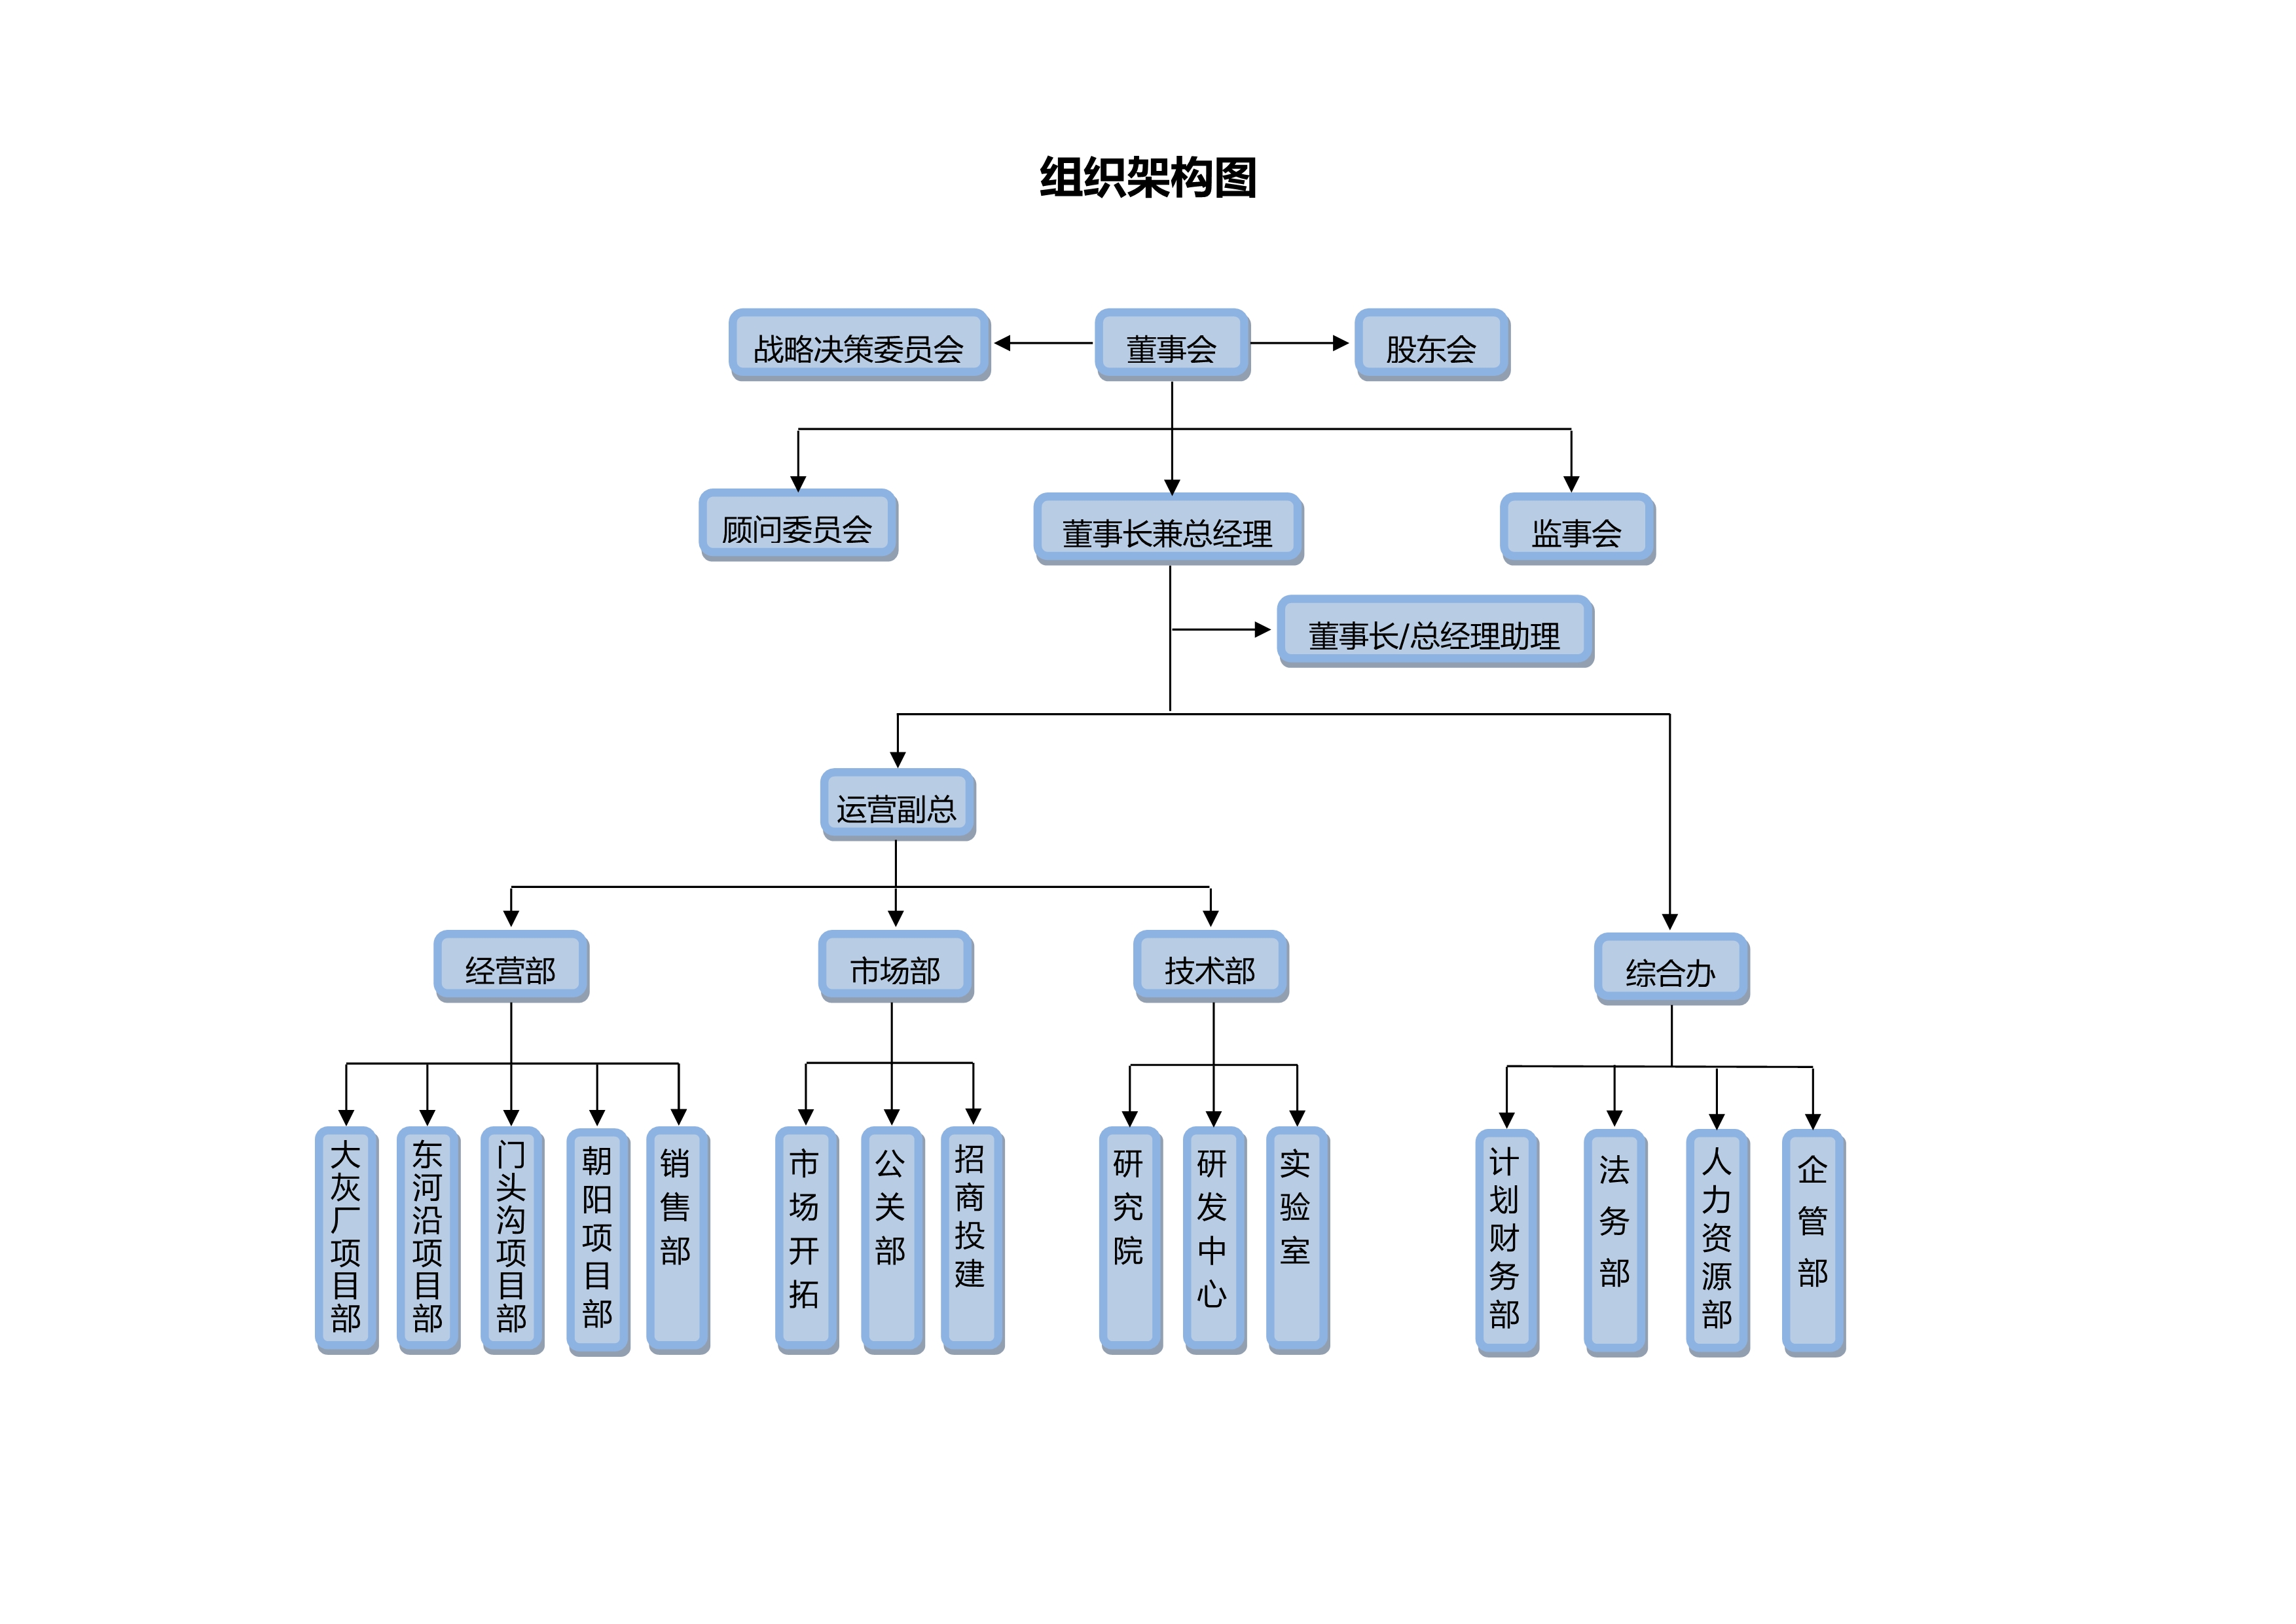 组织架构图11-0001.jpeg